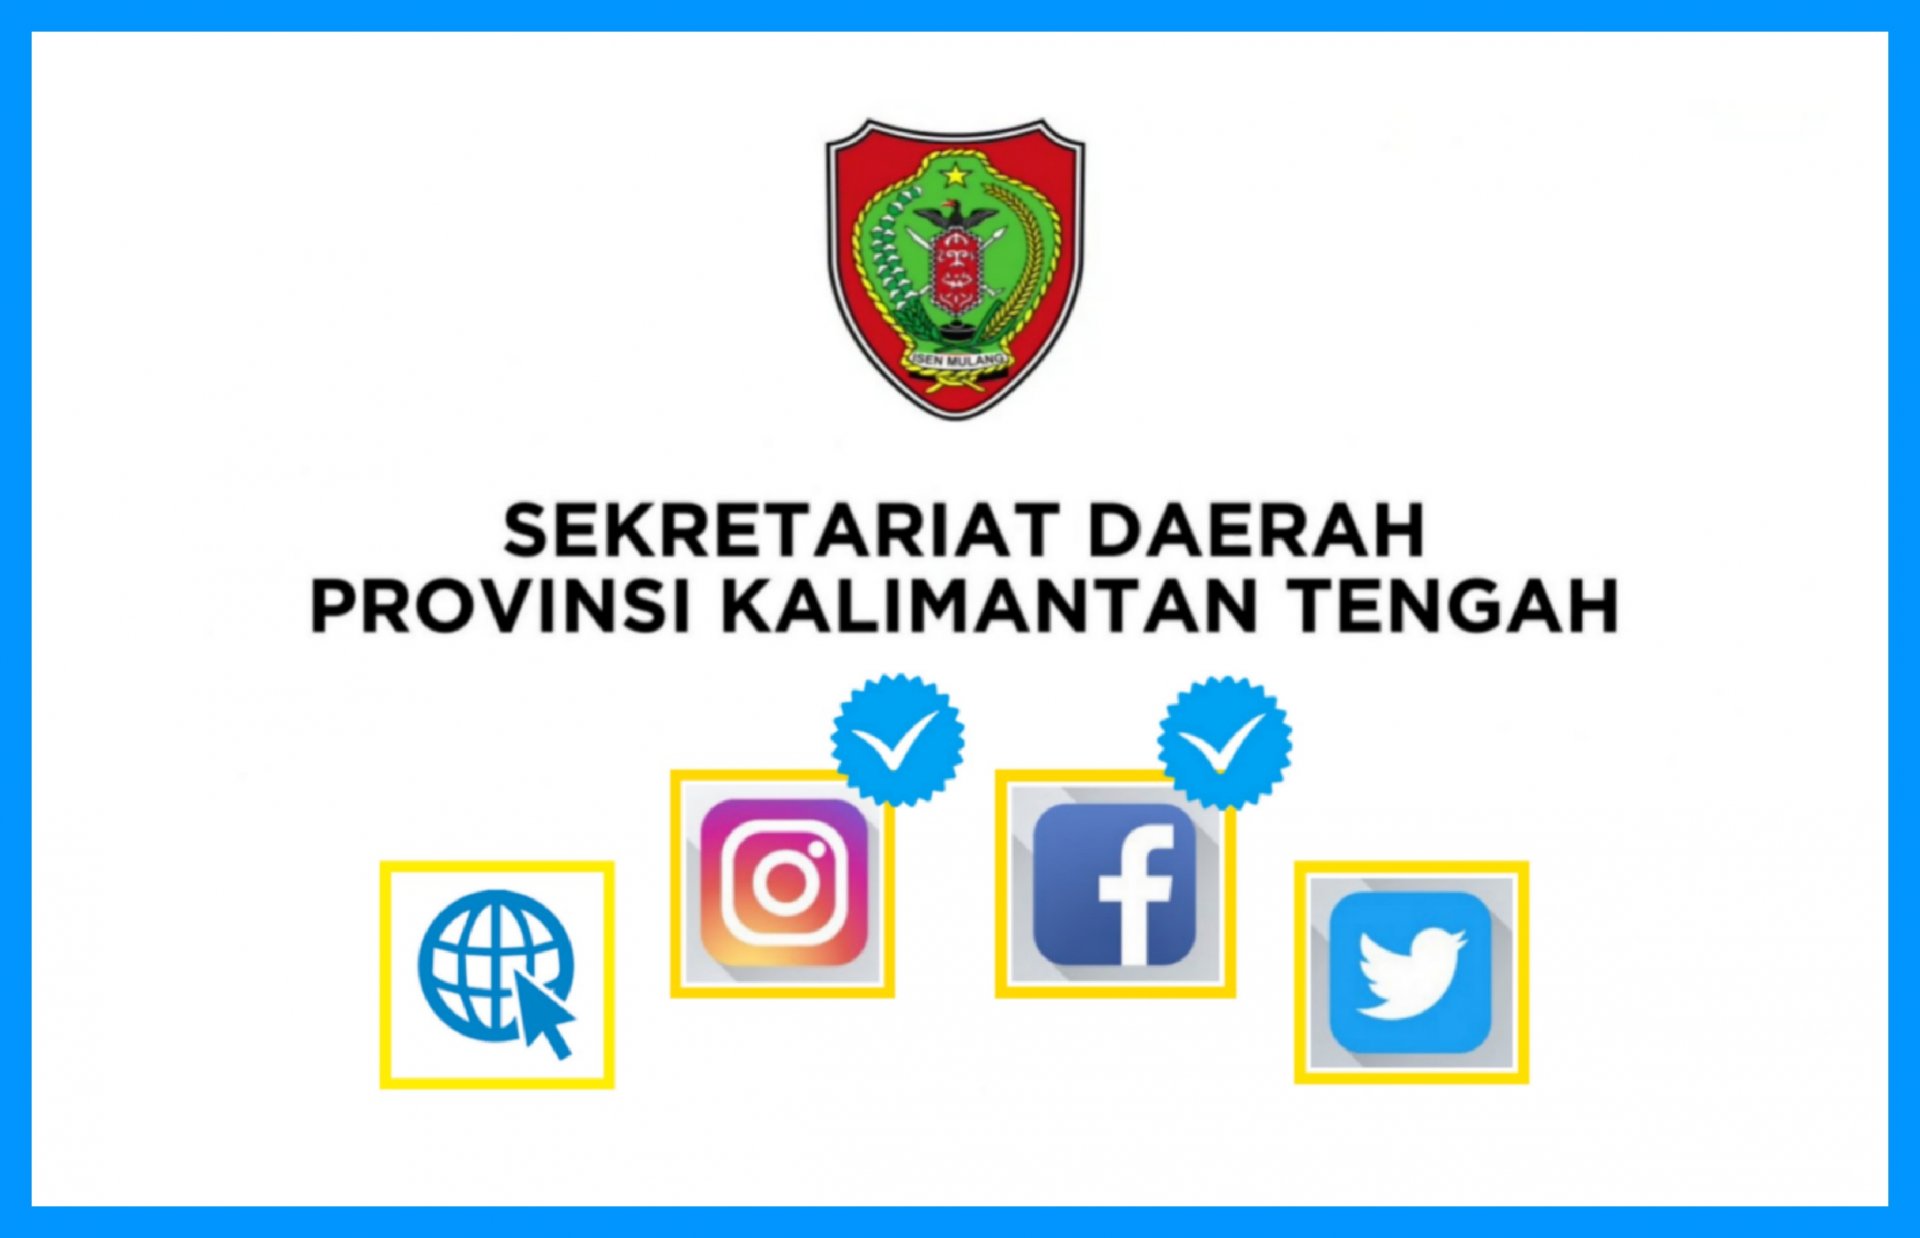 Media Sosial dan Situs Web Resmi Sekretariat Daerah Provinsi Kalimantan Tengah